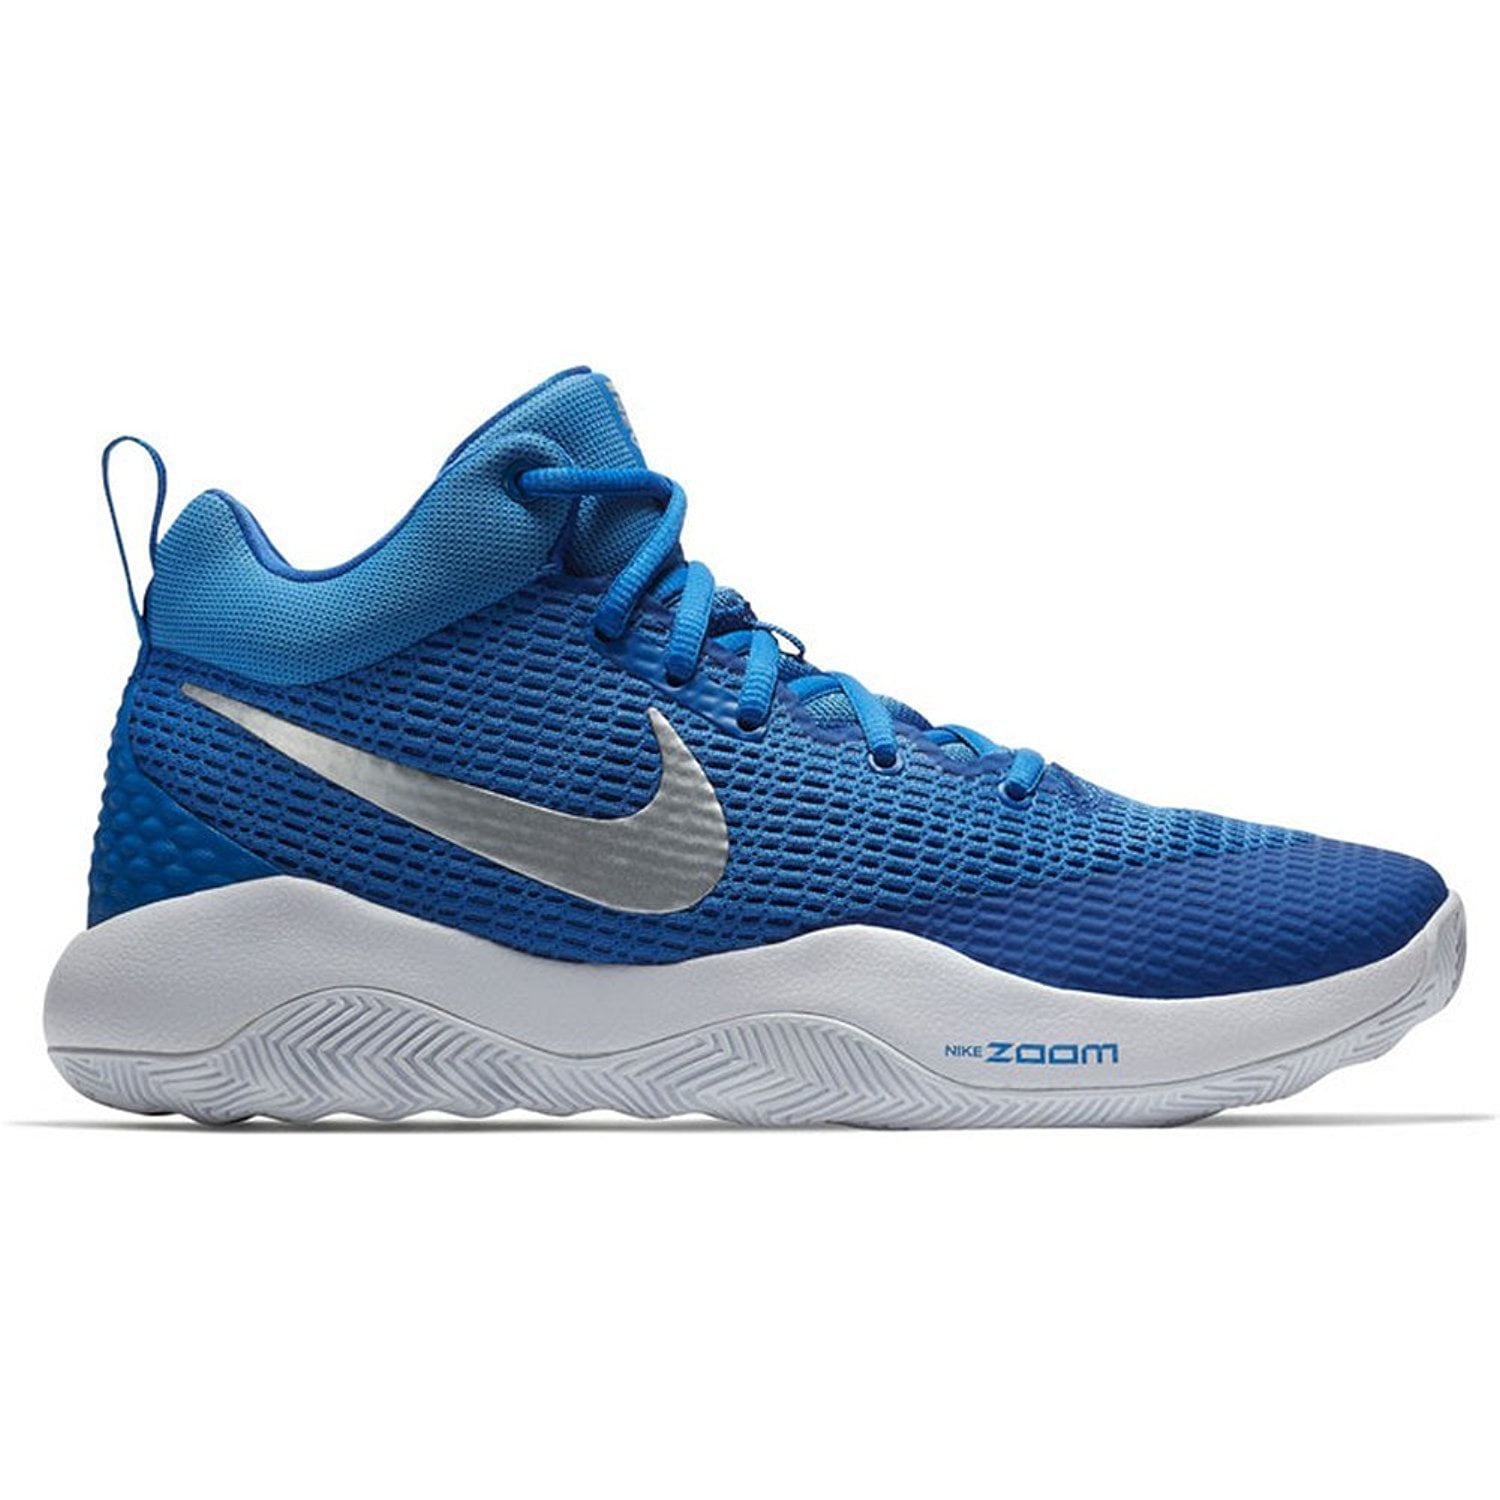 Nike nk922048 400 Zoom Rev TB Mens Basketball Shoes (14 M US) - Walmart.com